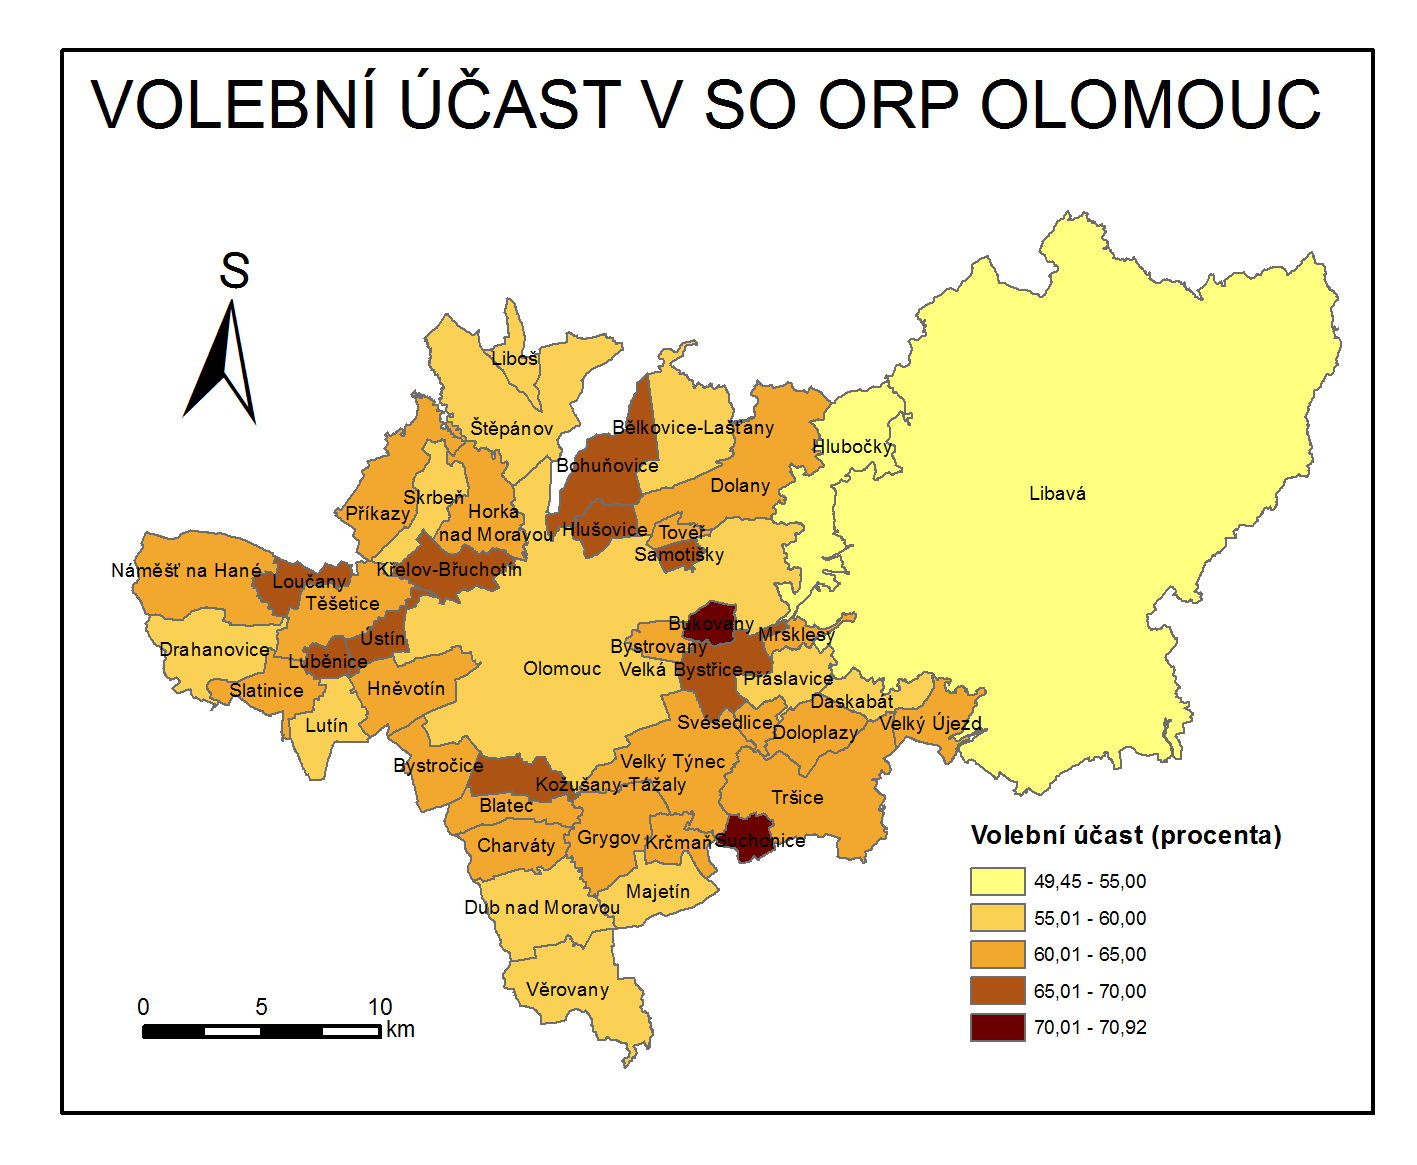 6.2 Volební účast a podpora v SO ORP Olomouc Nejvyšší volební účast v SO ORP Olomouc zaznamenaly obce Suchonice (70,92 %) a Bukovany (70,54 %). Naopak nejnižší 49,45 % získal Vojenský újezd Libavá.